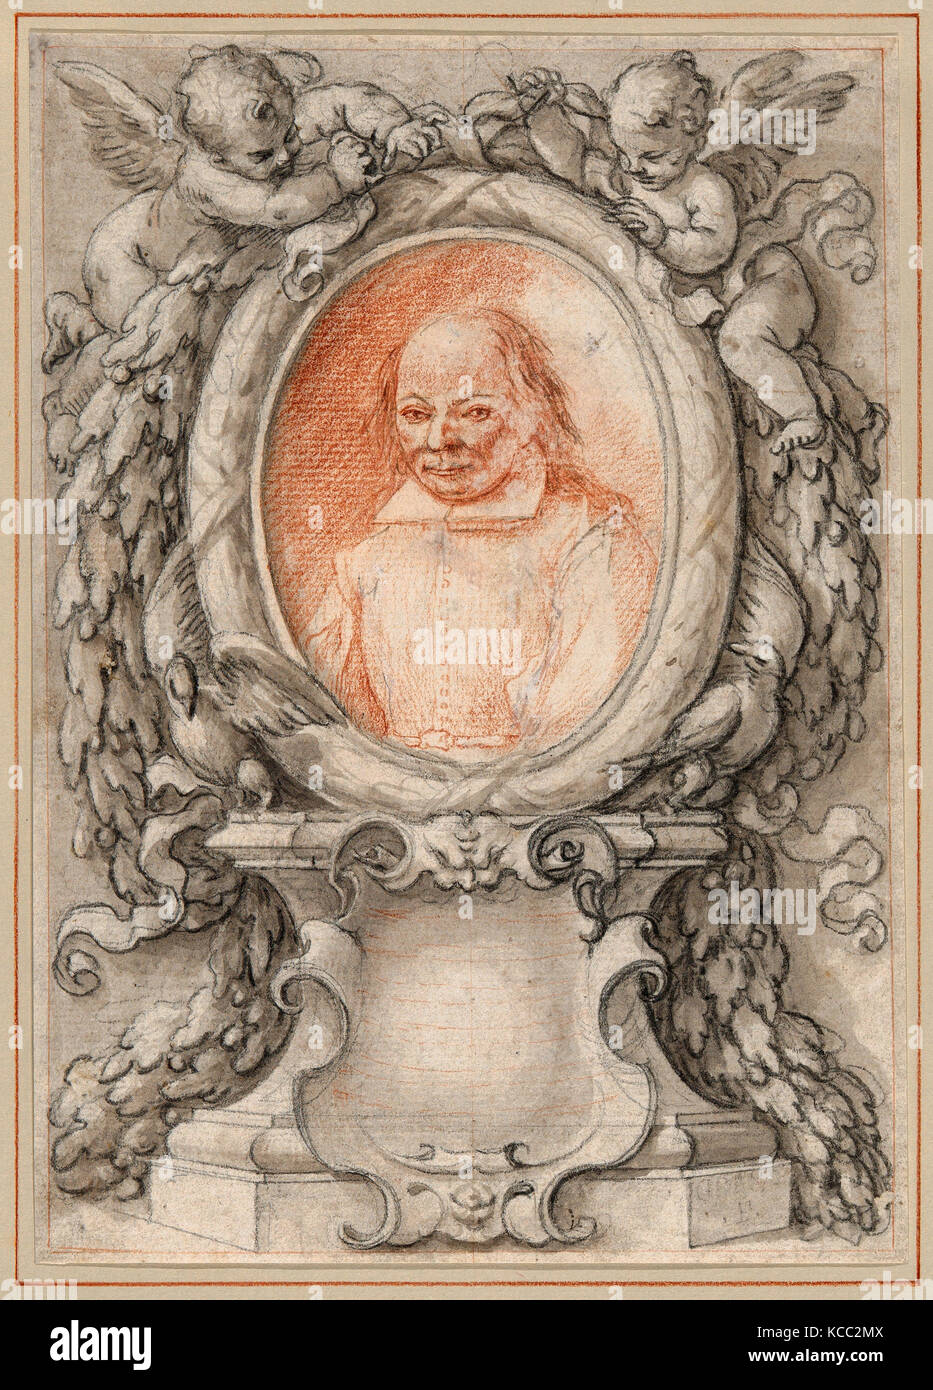 Dessins et gravures, dessins, Portrait ovale d'un homme lors d'une trame avec un cartouche, artiste, Antonino Grano, italien Banque D'Images